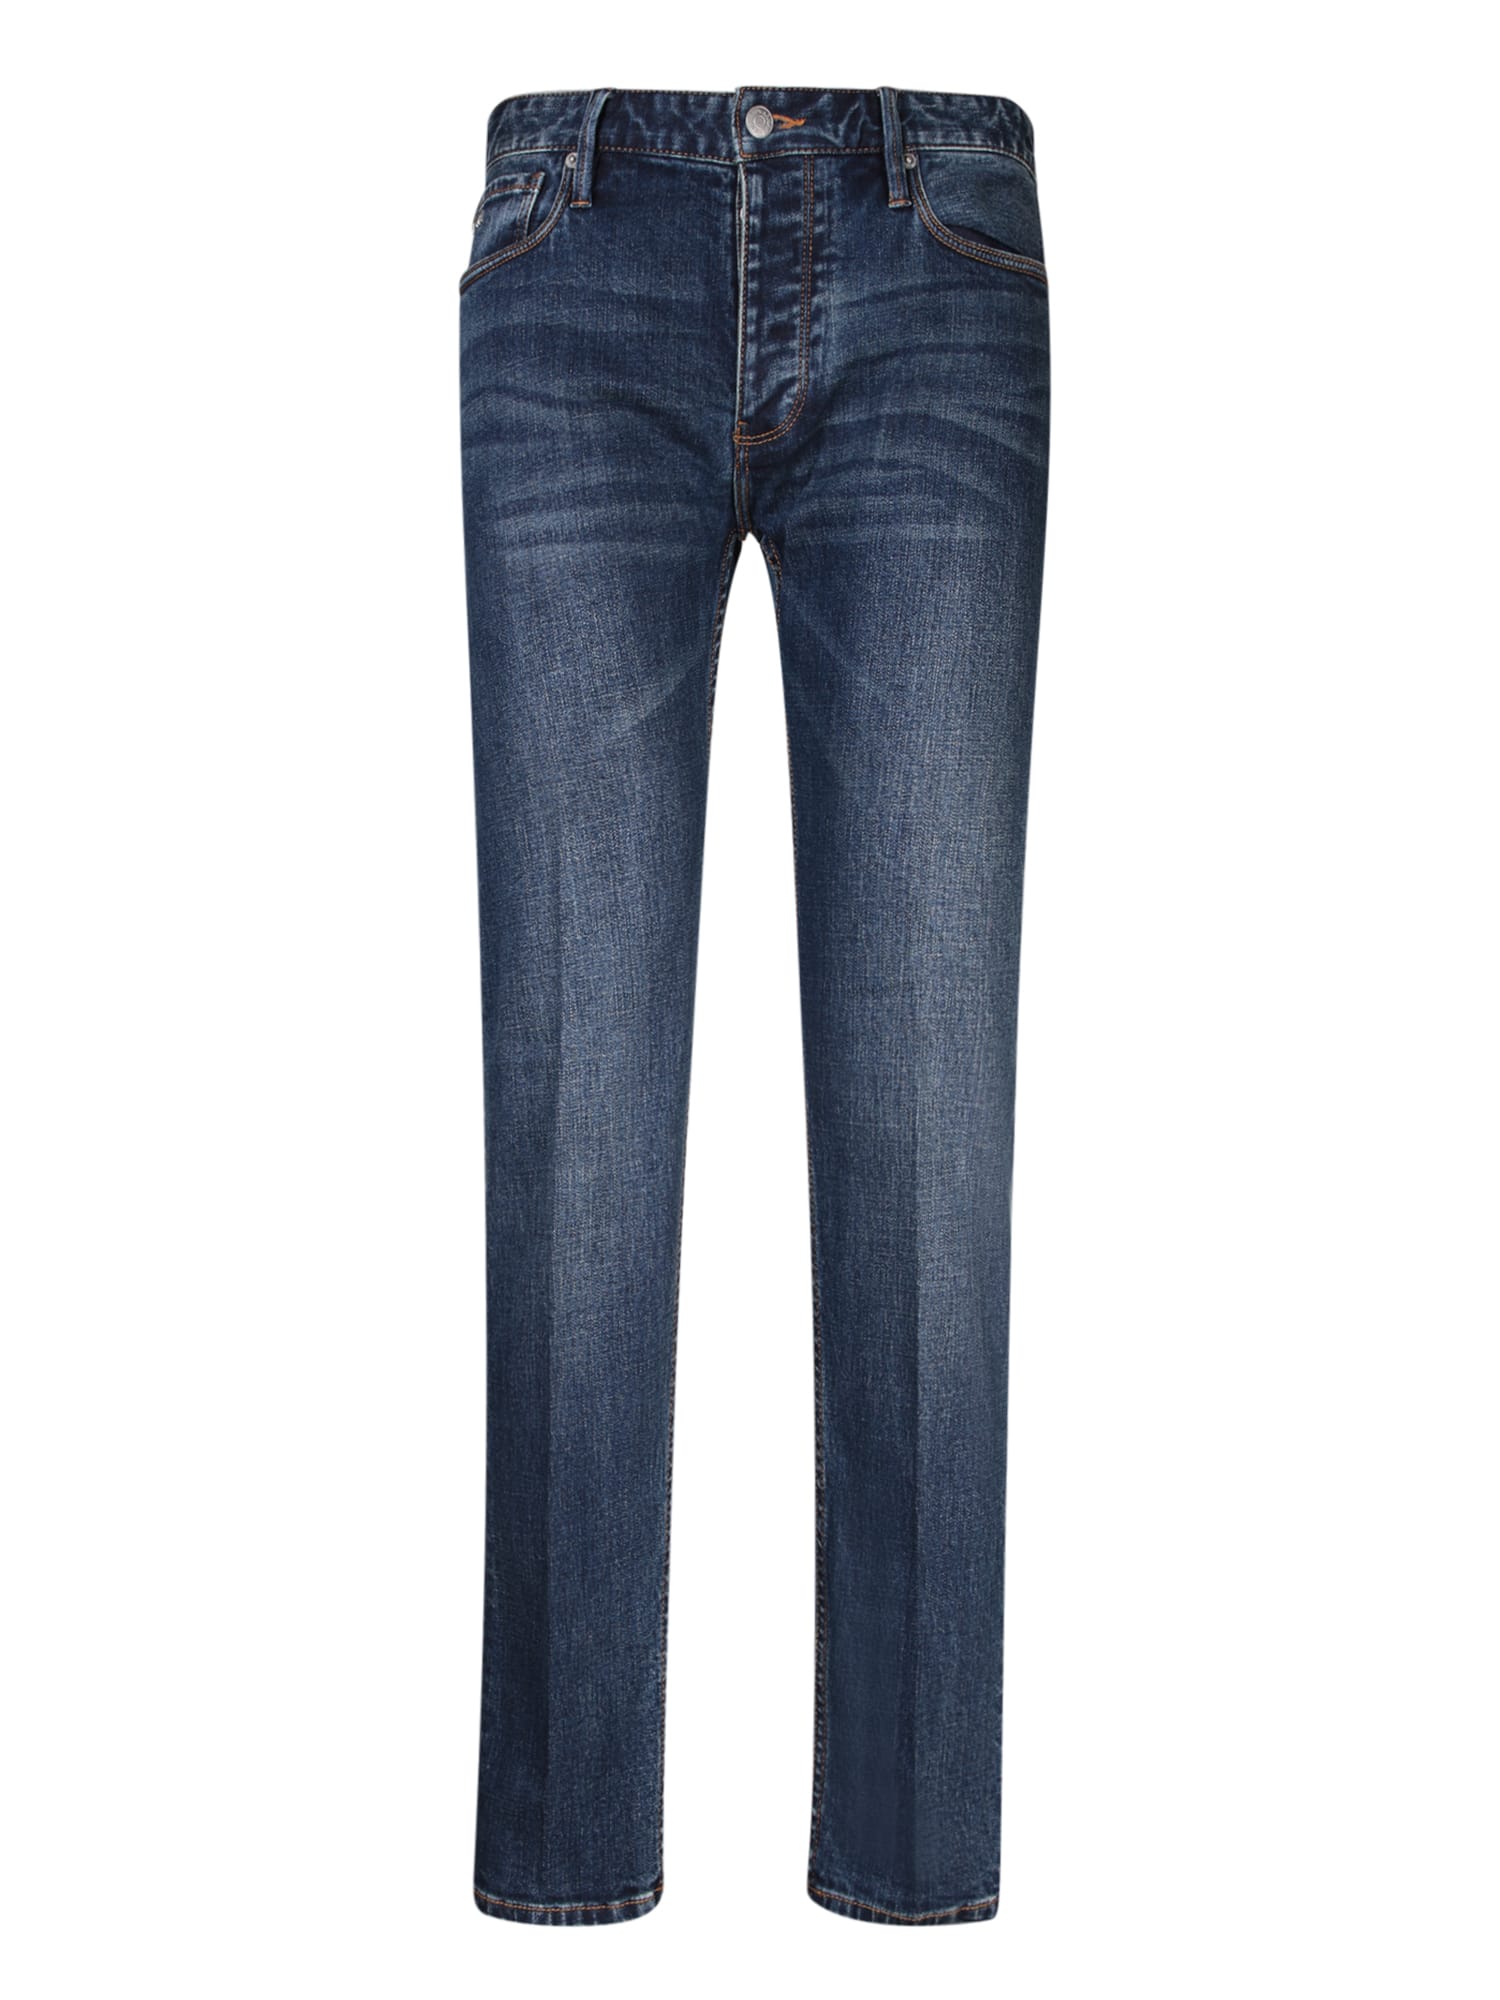 Shop Emporio Armani Slim Fit Blue Jeans